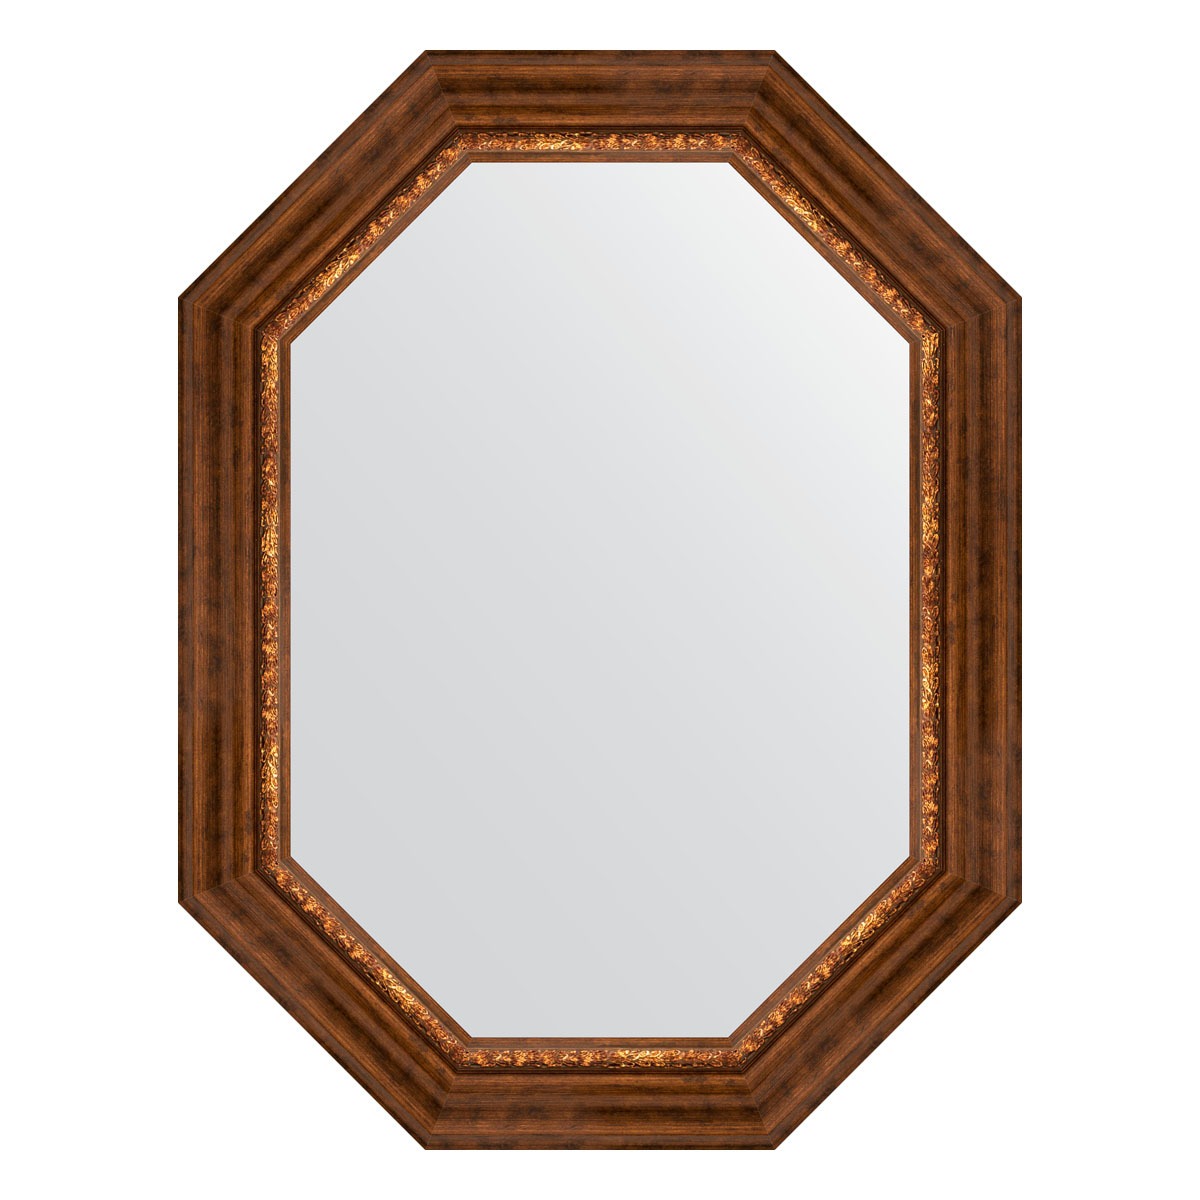 Зеркало в багетной раме Evoform римская бронза 88 мм 66x86 см зеркало в багетной раме evoform хамелеон 88 мм 66x86 см